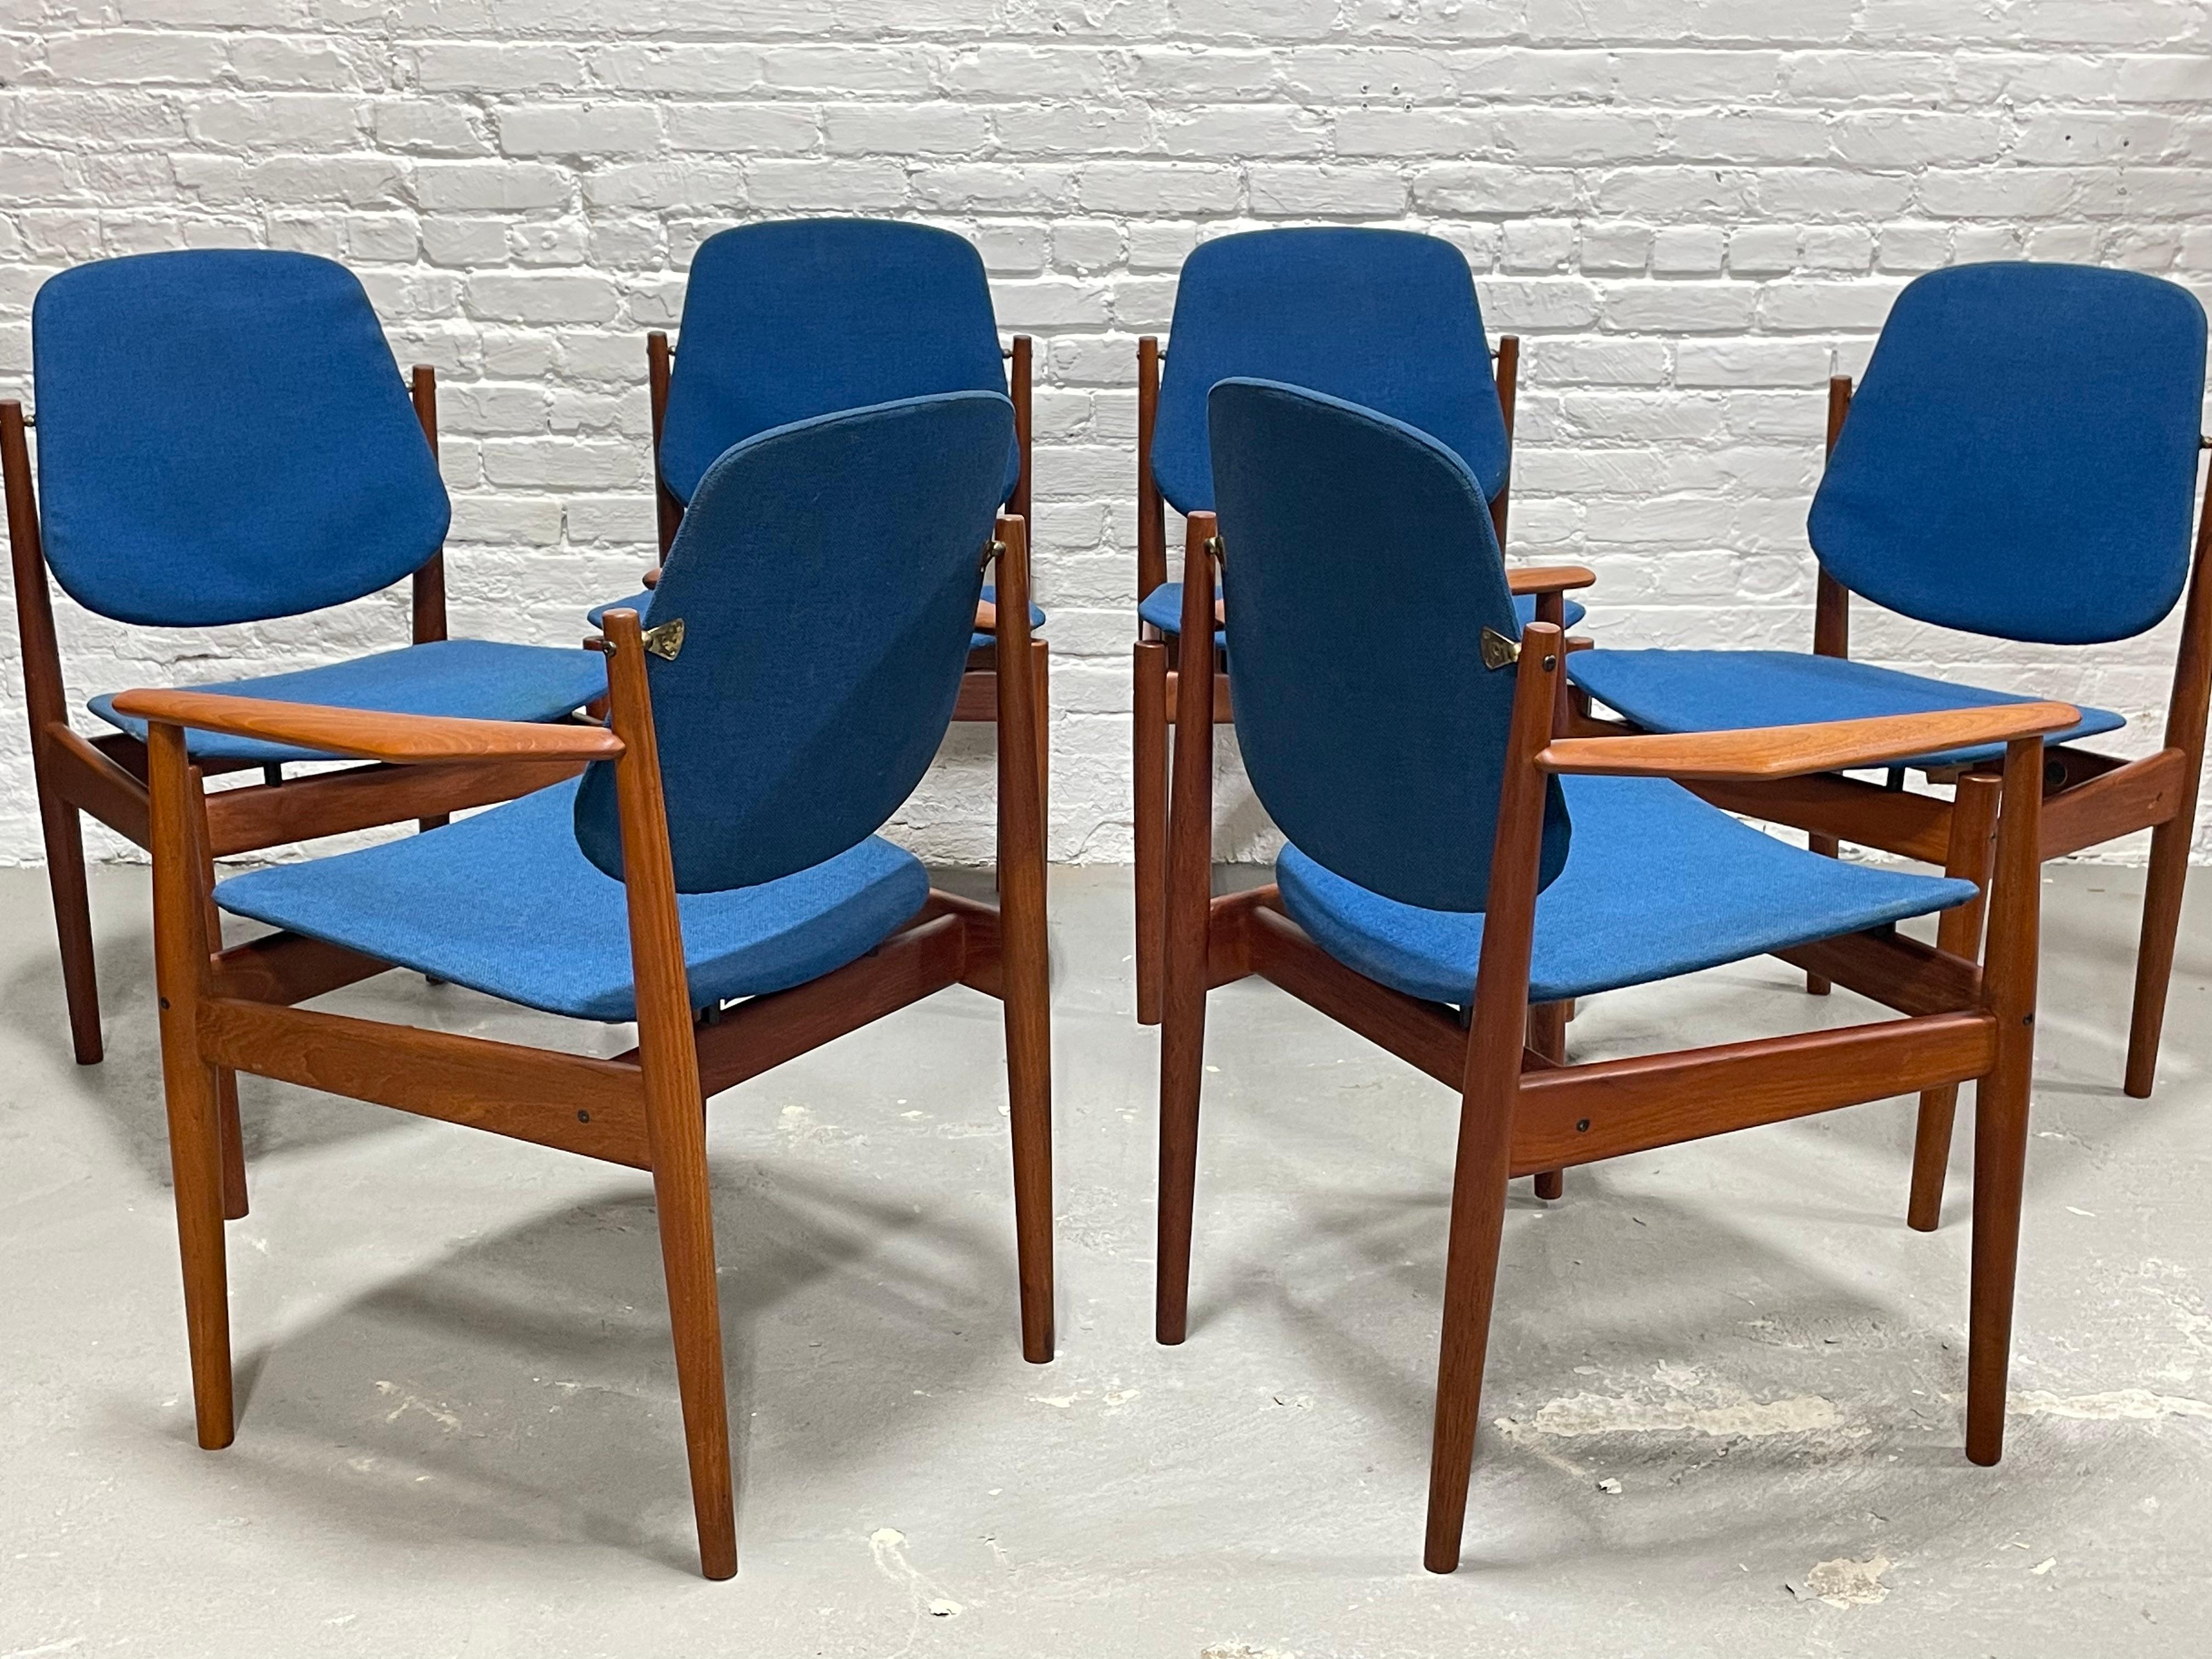 Mid-Century Modern Midcentury Danish Teak Dining Chairs by Arne Vodder for France & Daverkosen For Sale